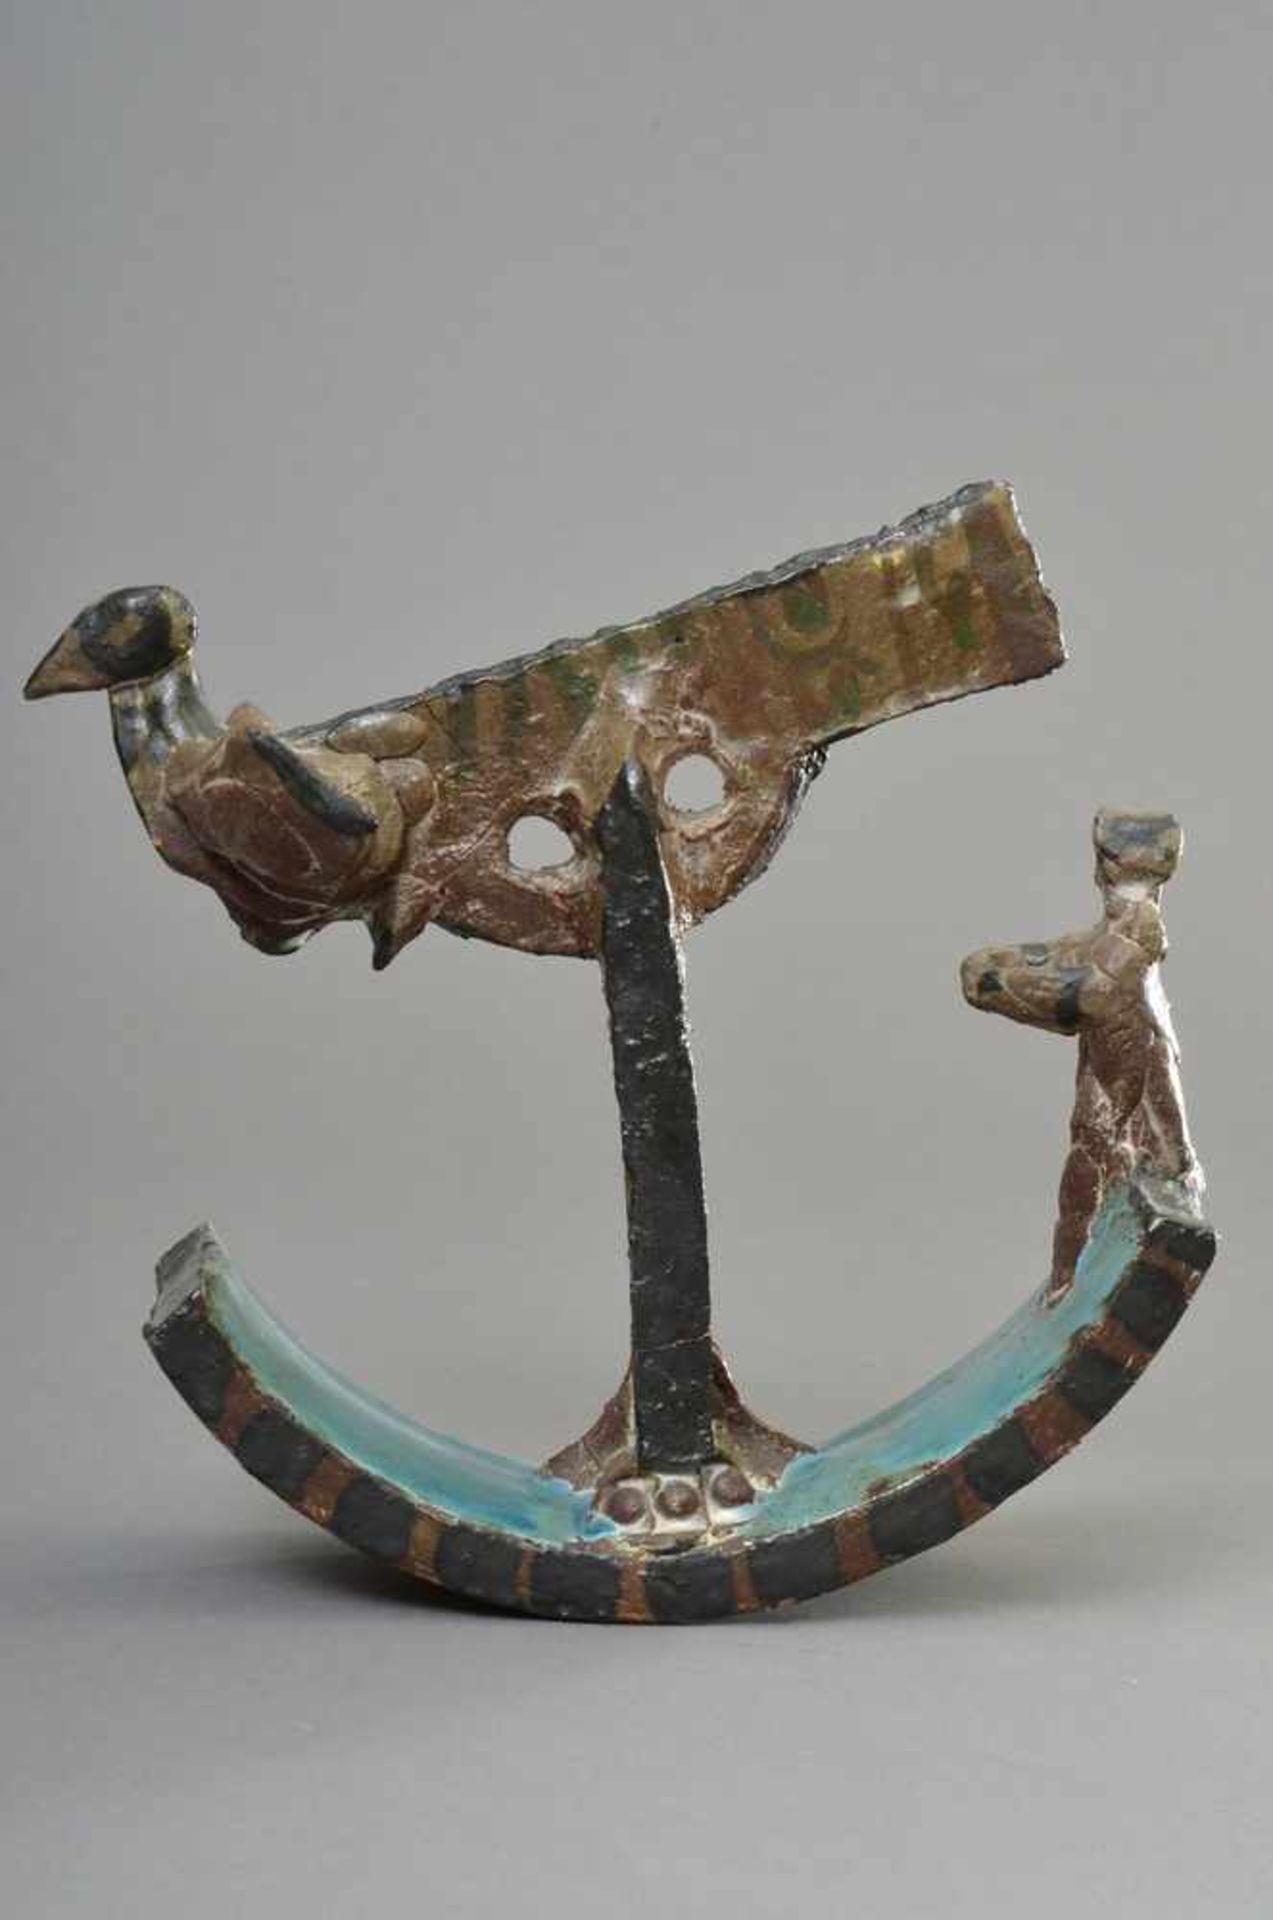 Portanier, Gilbert (*1926) "Vogel-Schiff", farbig glasierte Keramik Skulptur, H. 21cm, rest. - Bild 2 aus 4